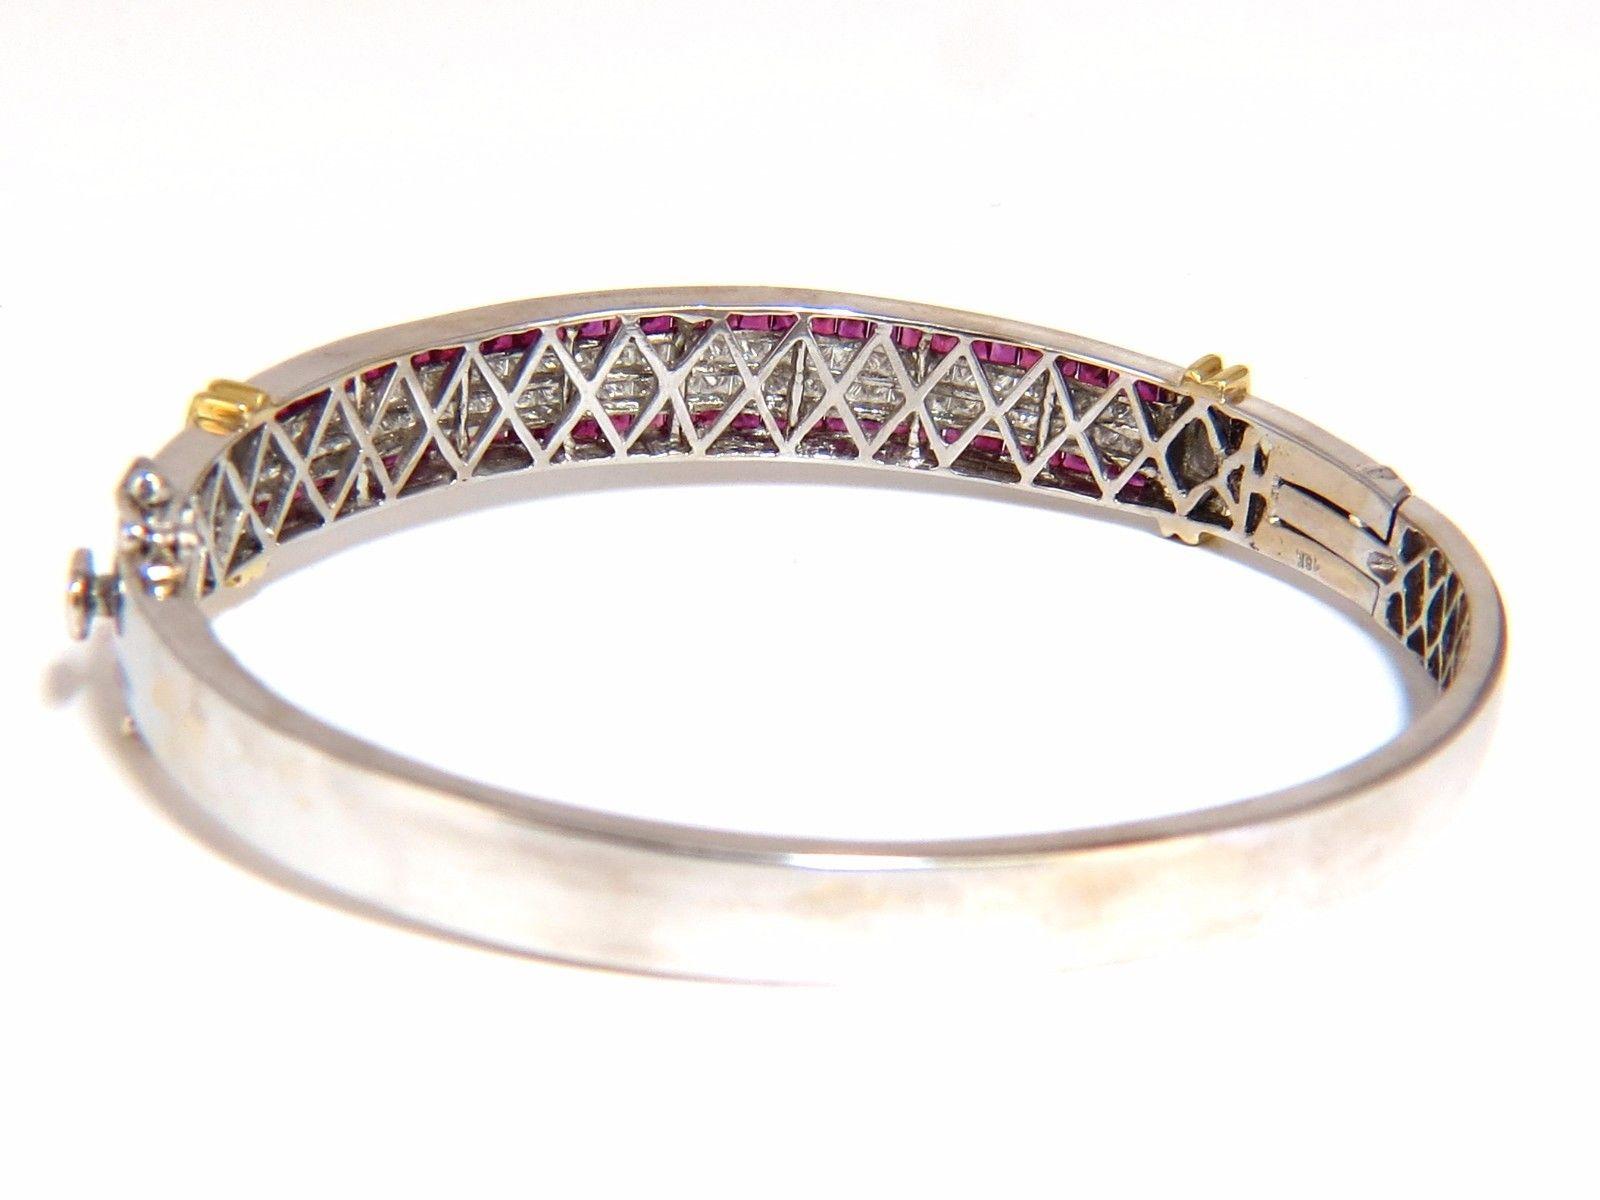 5.30 Carat Natural Princess Cut Ruby Diamonds Bangle Bracelet 18 Karat 3